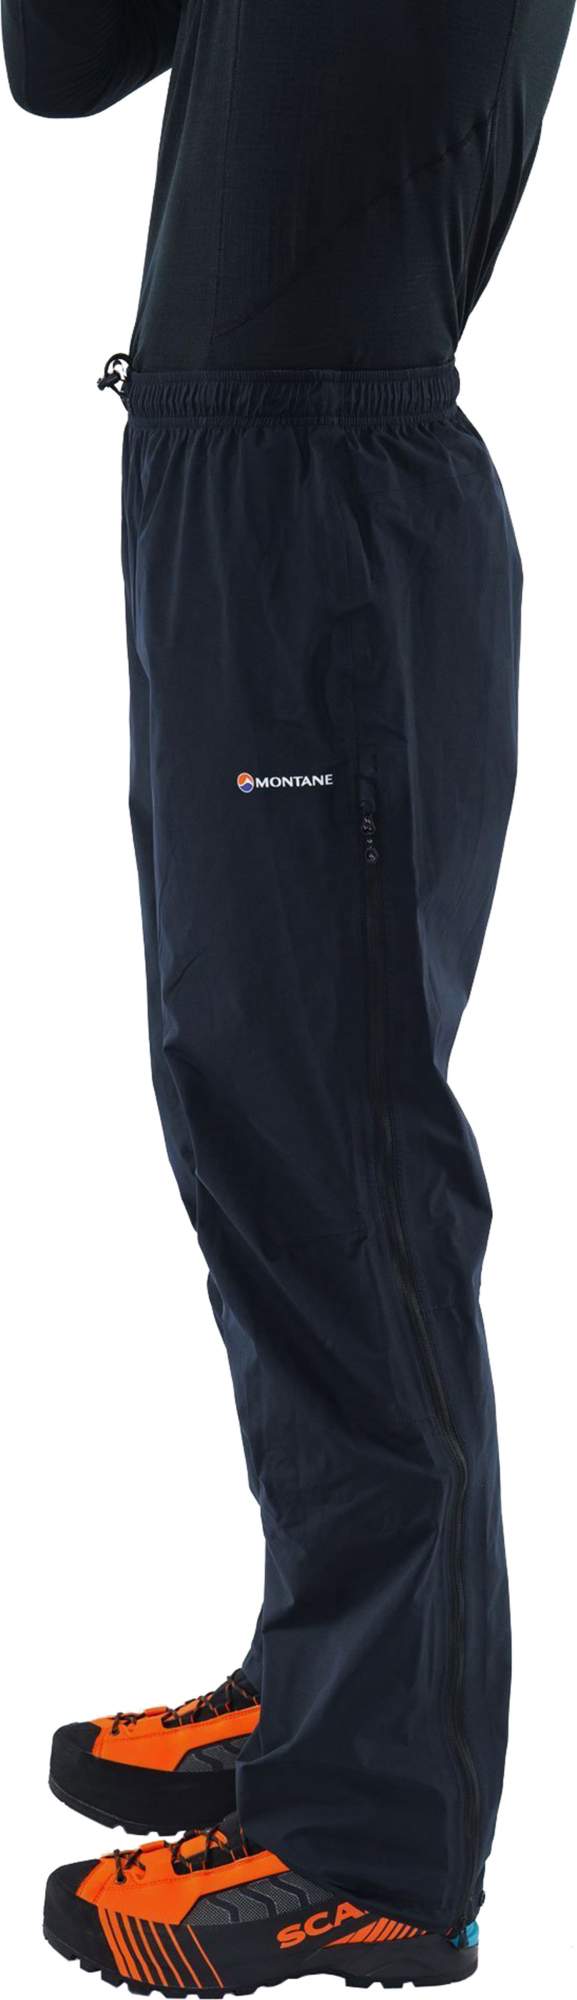 Спортивные брюки Montane Pac Plus Pants-Reg Leg black, XXL INT